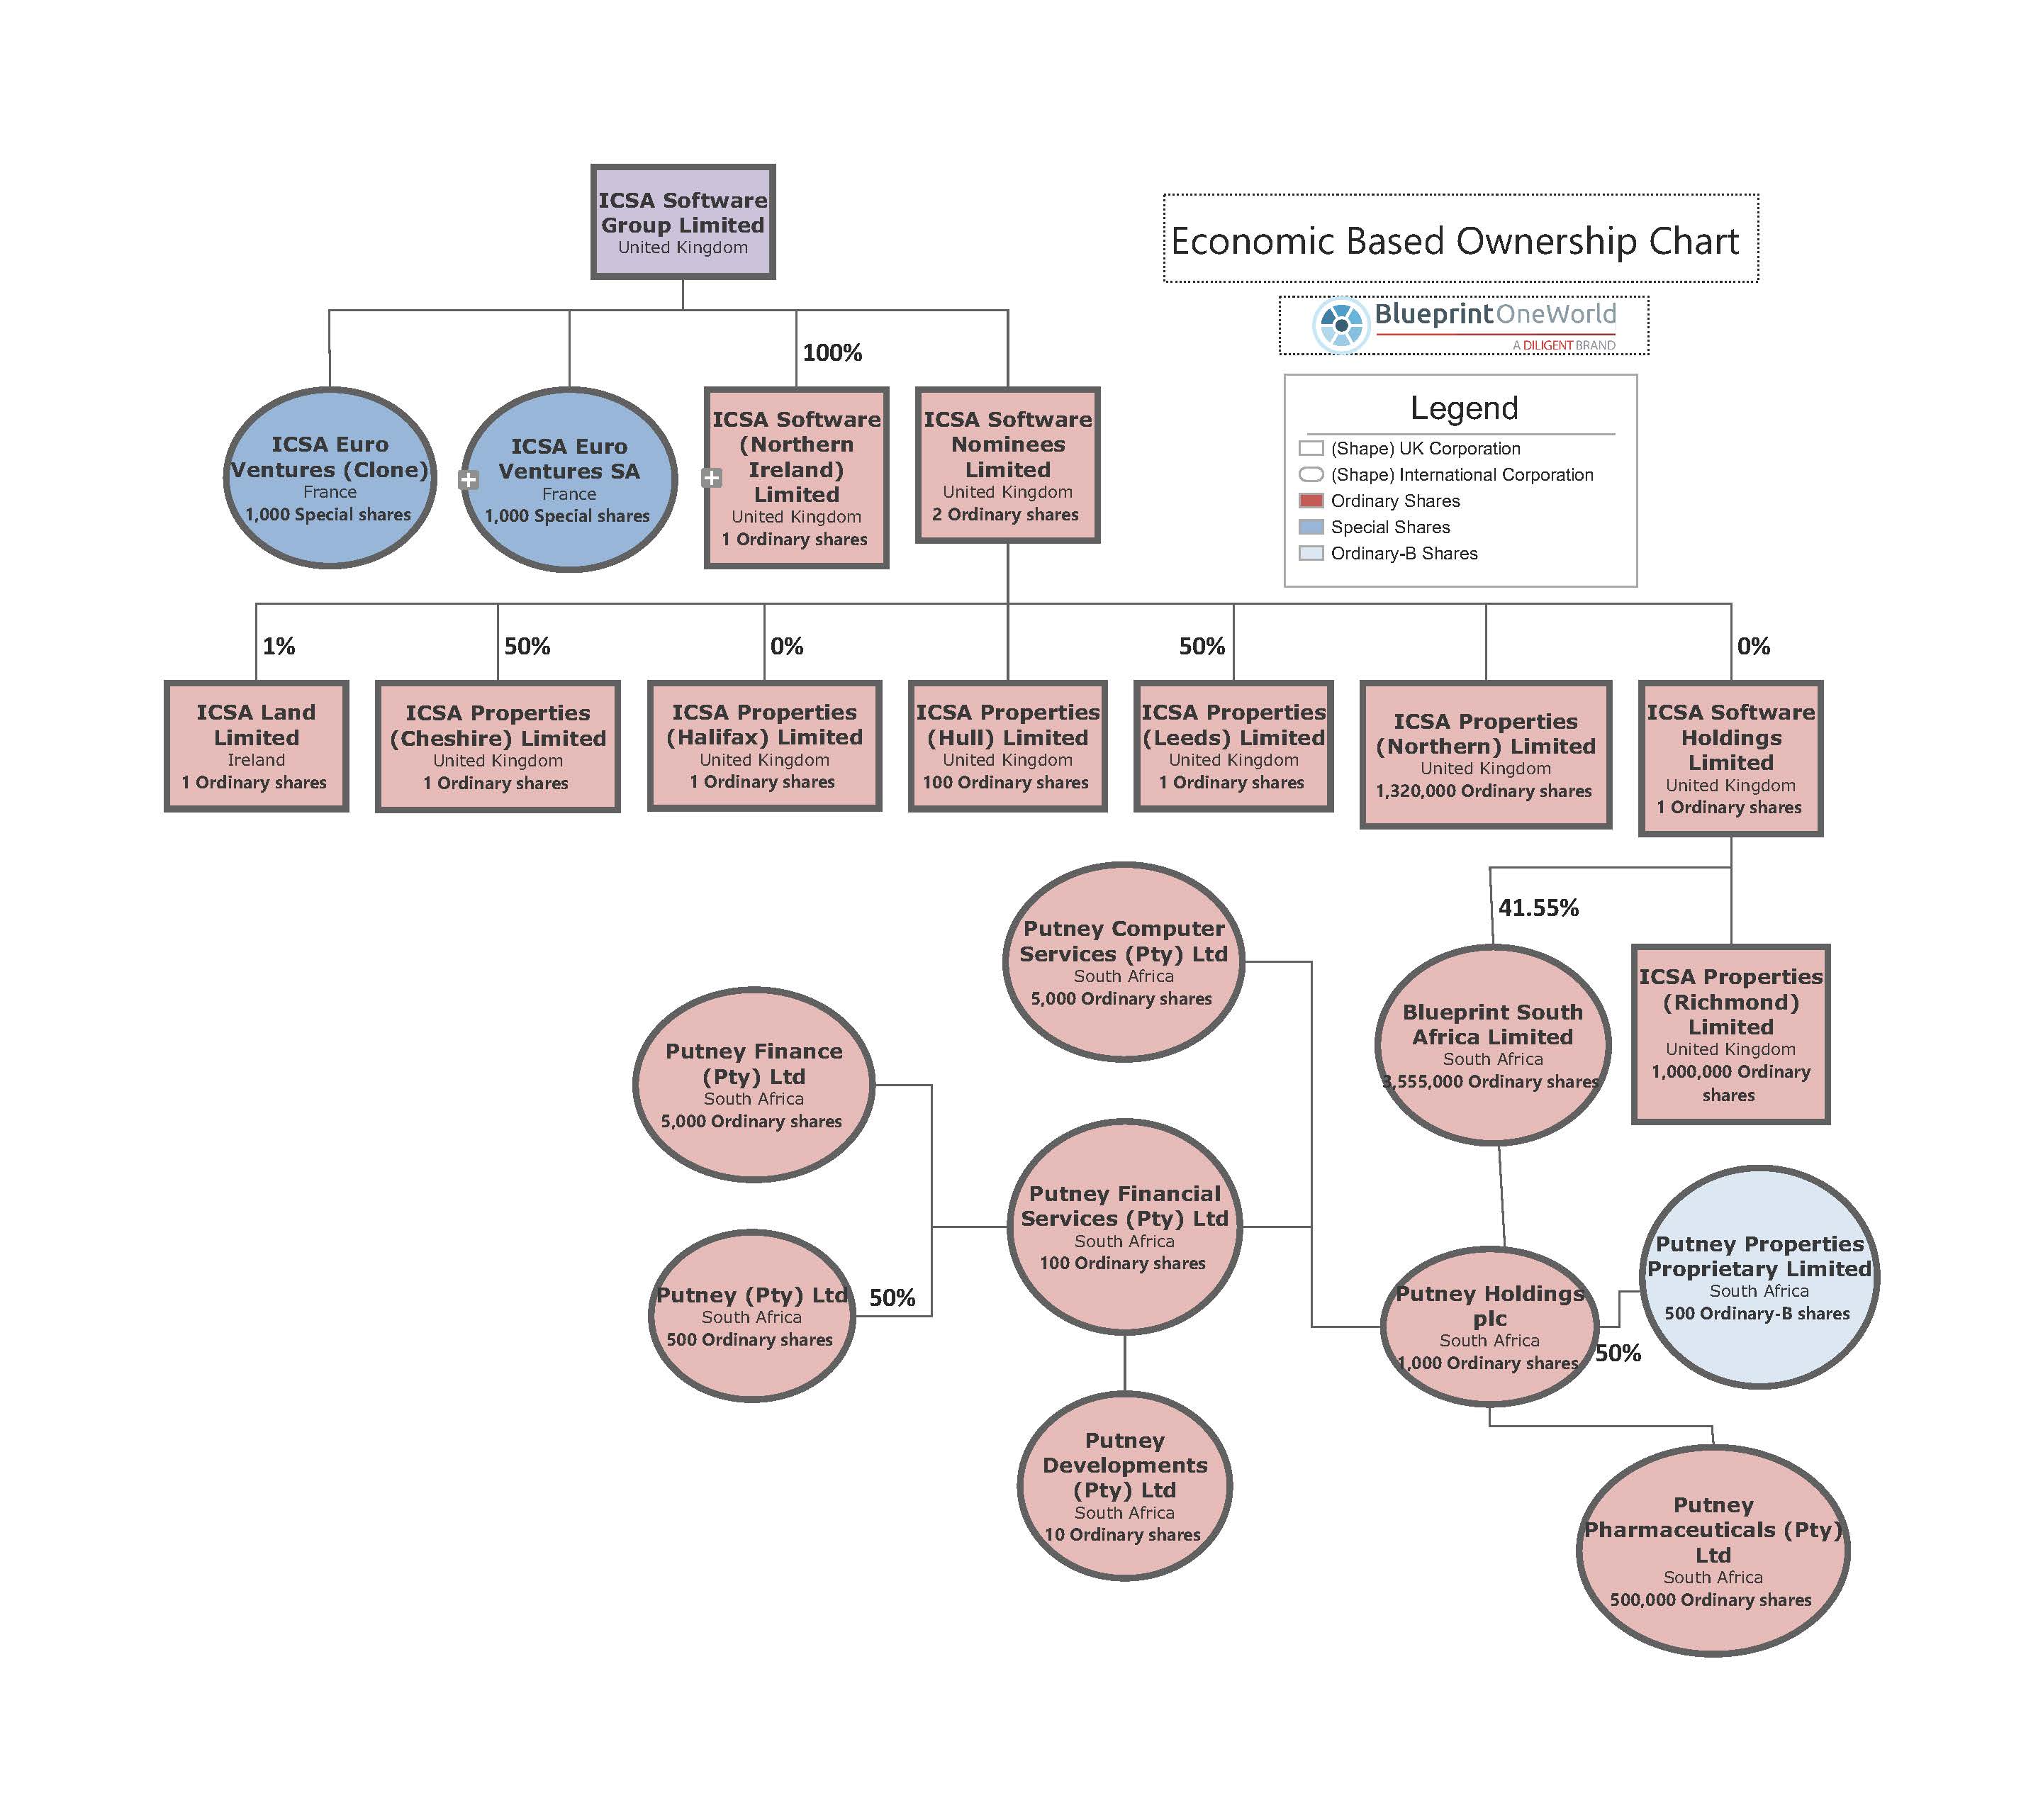 Entity Organizational Chart